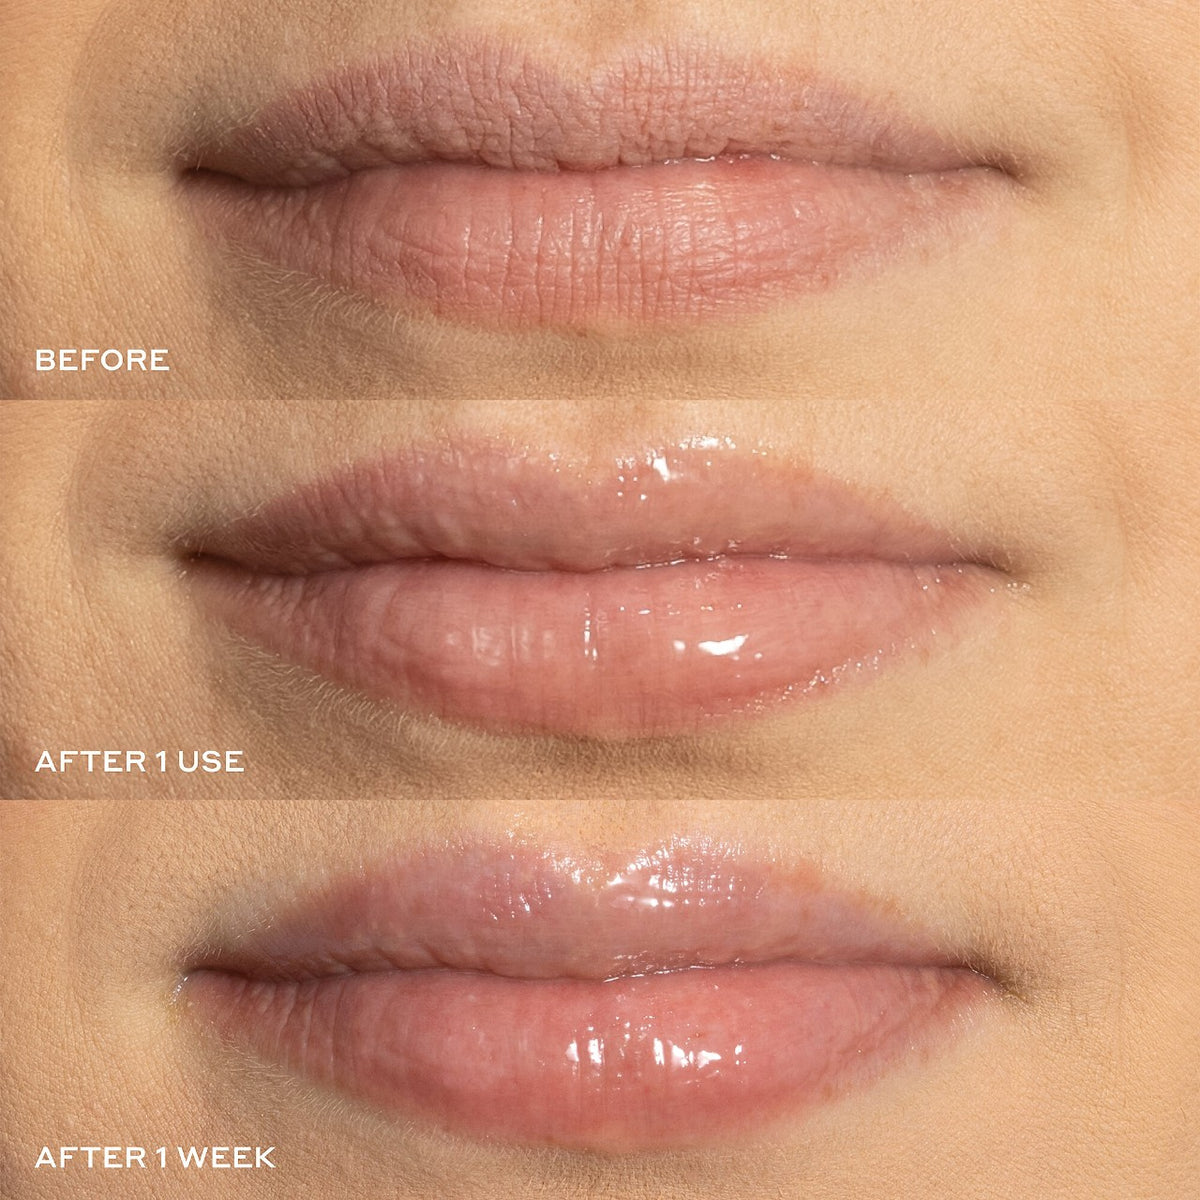 OLEHENRIKSEN Pout Preserve Peptide Lip Treatment  Volare Makeup   